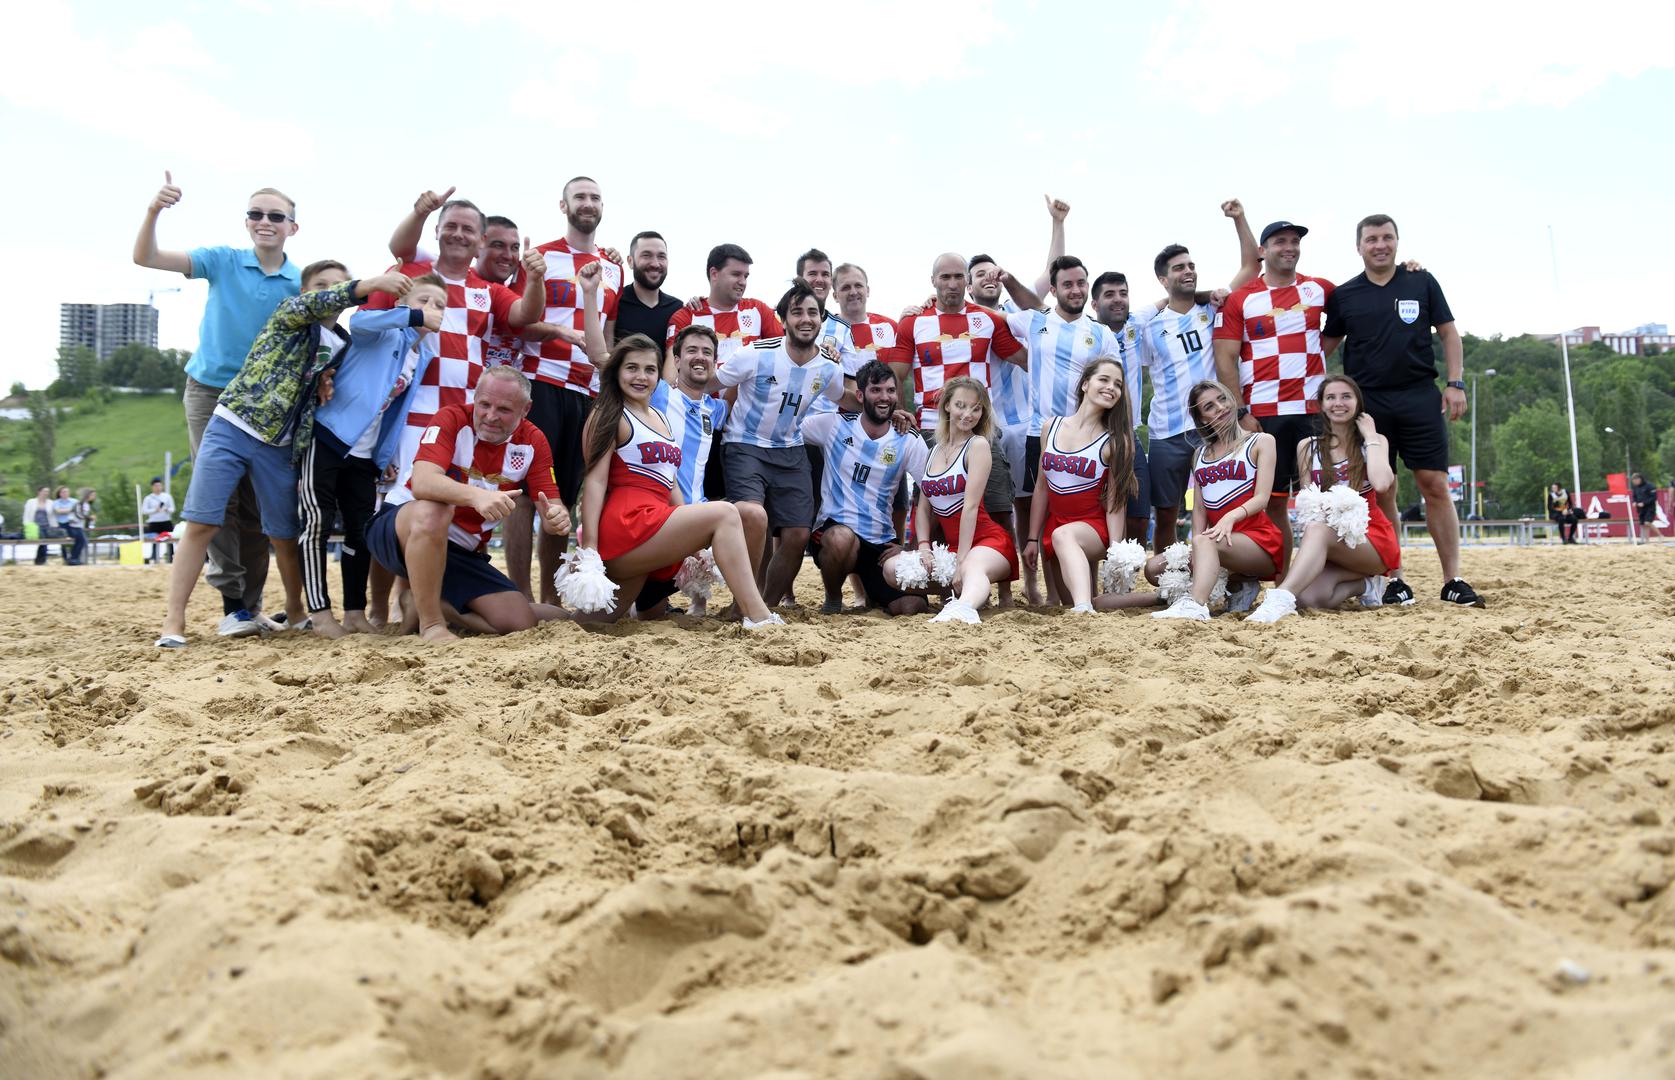 Uoči te utakmice na pijesku su snage odmjerili hrvatski i argentinski navijači.

